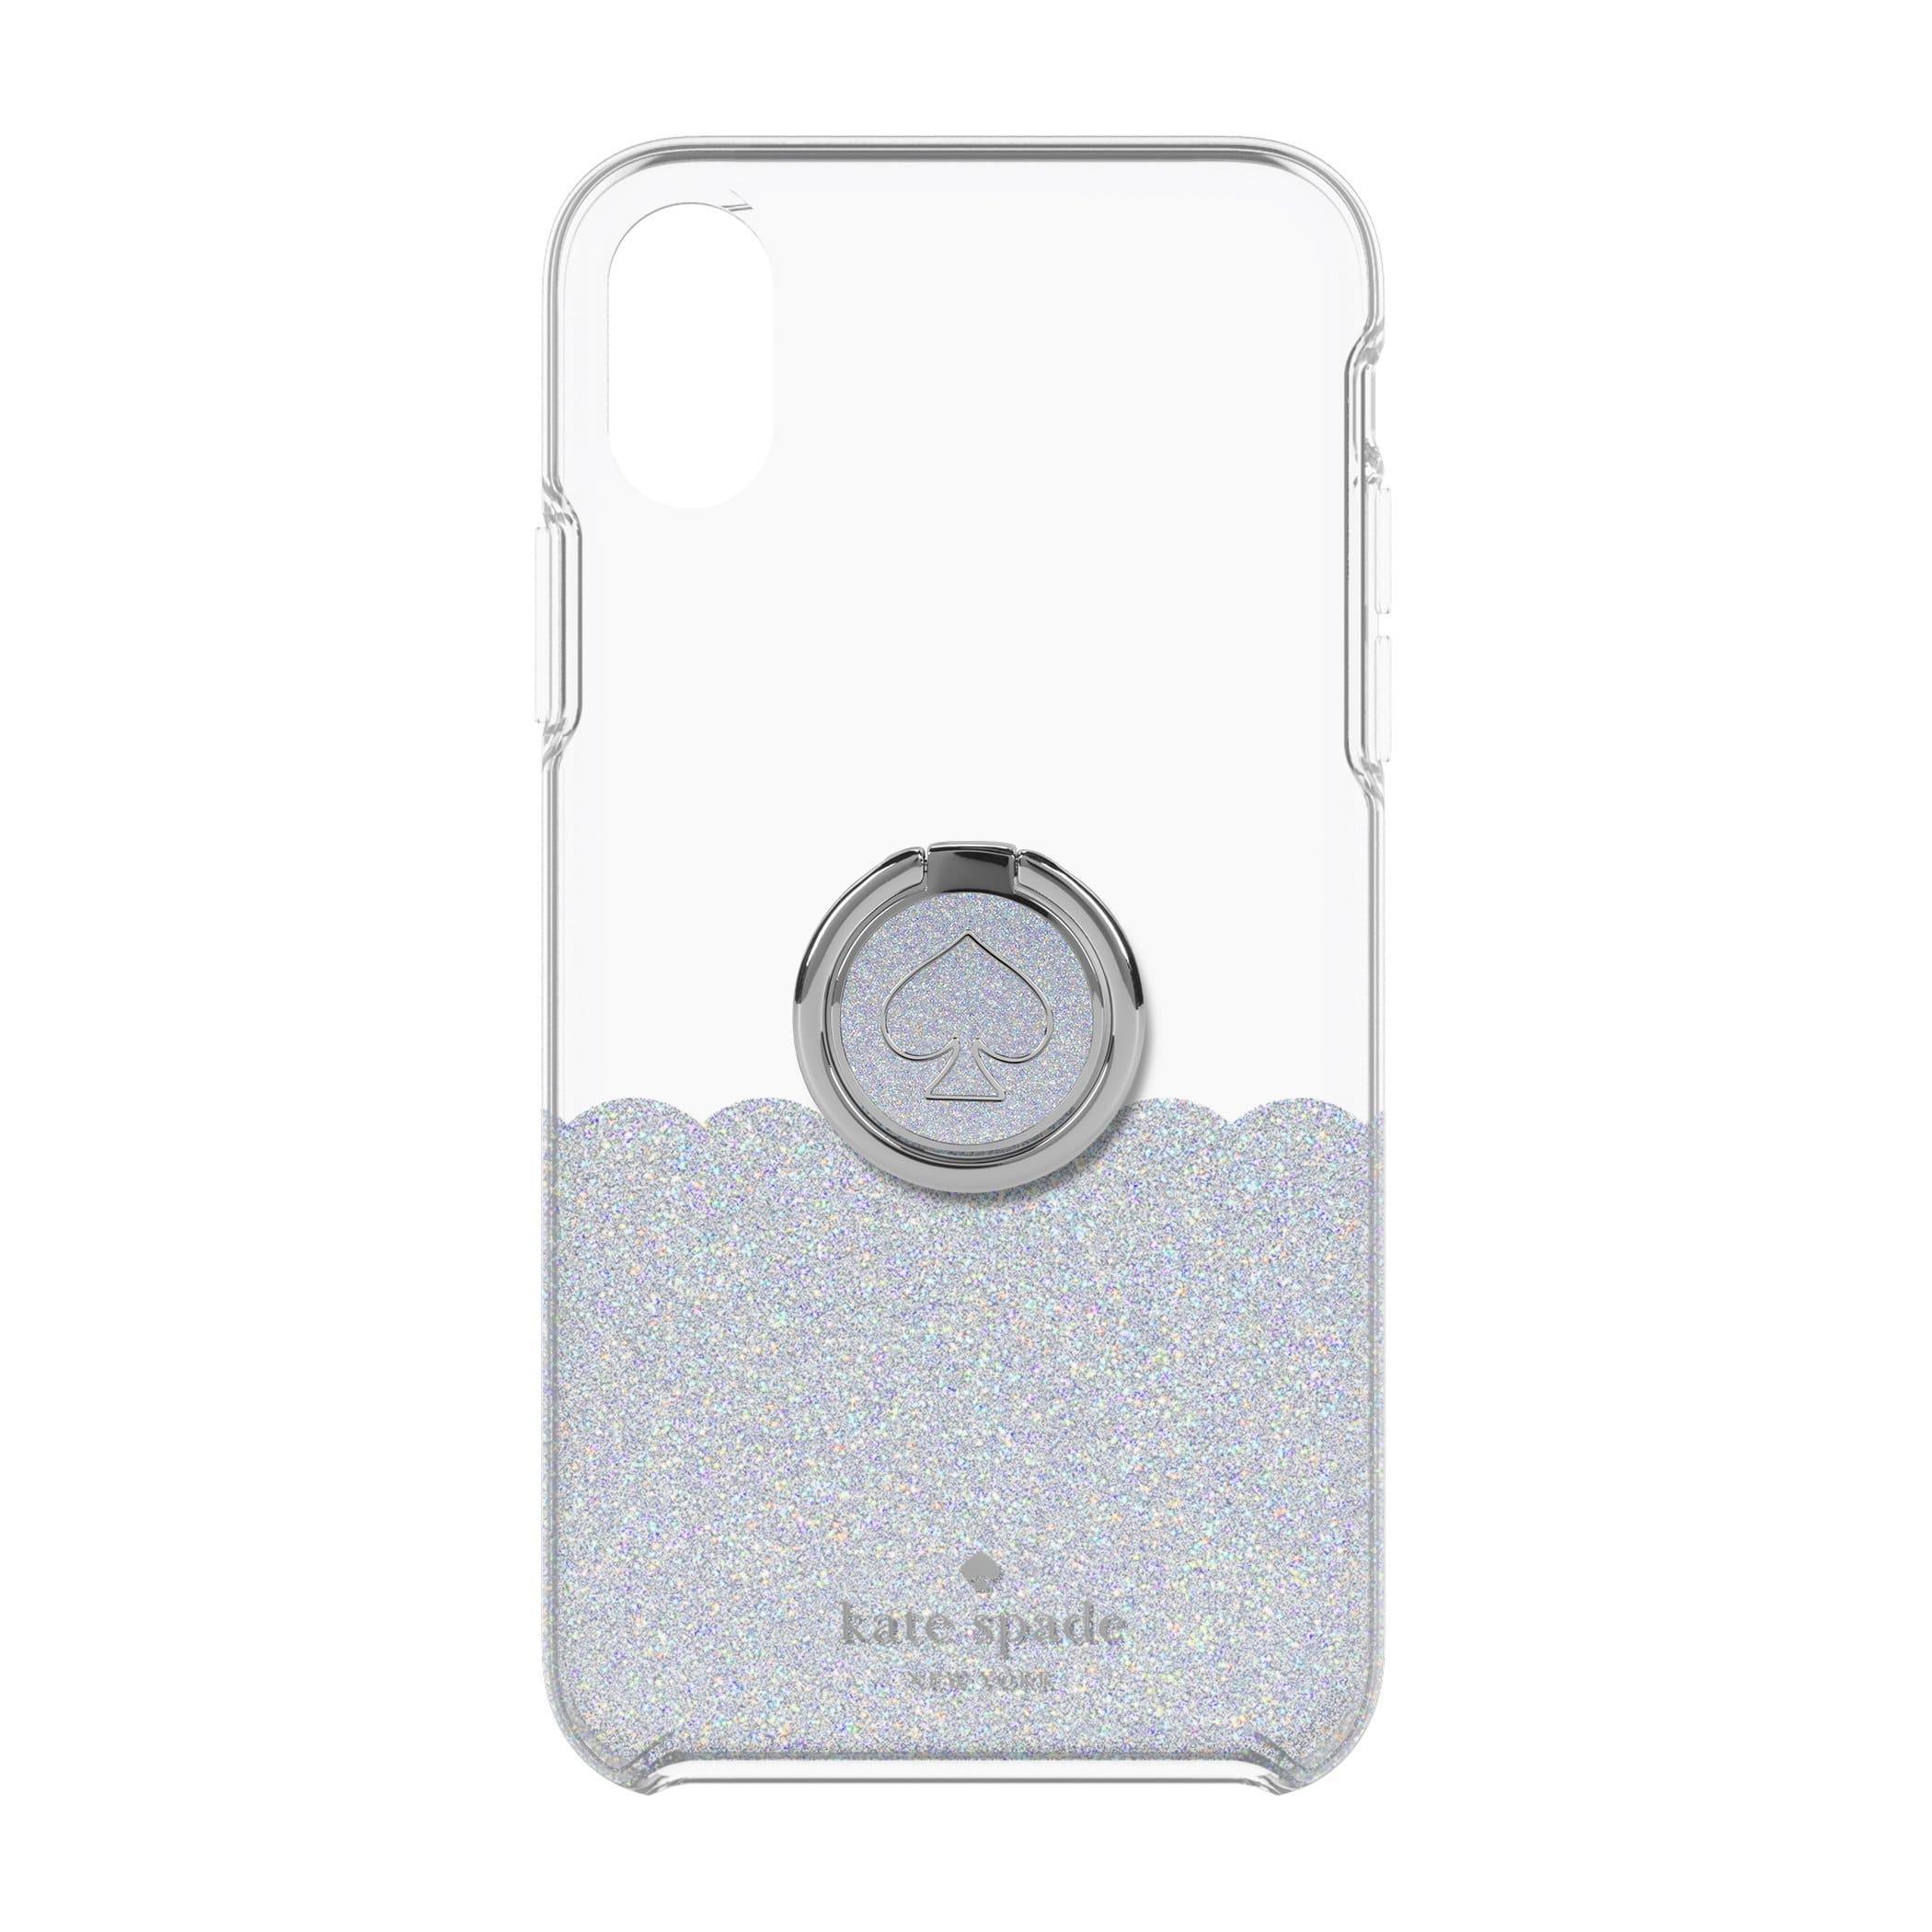 كفر حماية آيفون KATE SPADE NEW YORK Gift Set: Ring Stand & Protective Hardshell Case - Scallop Mermaid Glitter / Clear For iPhone XS/X